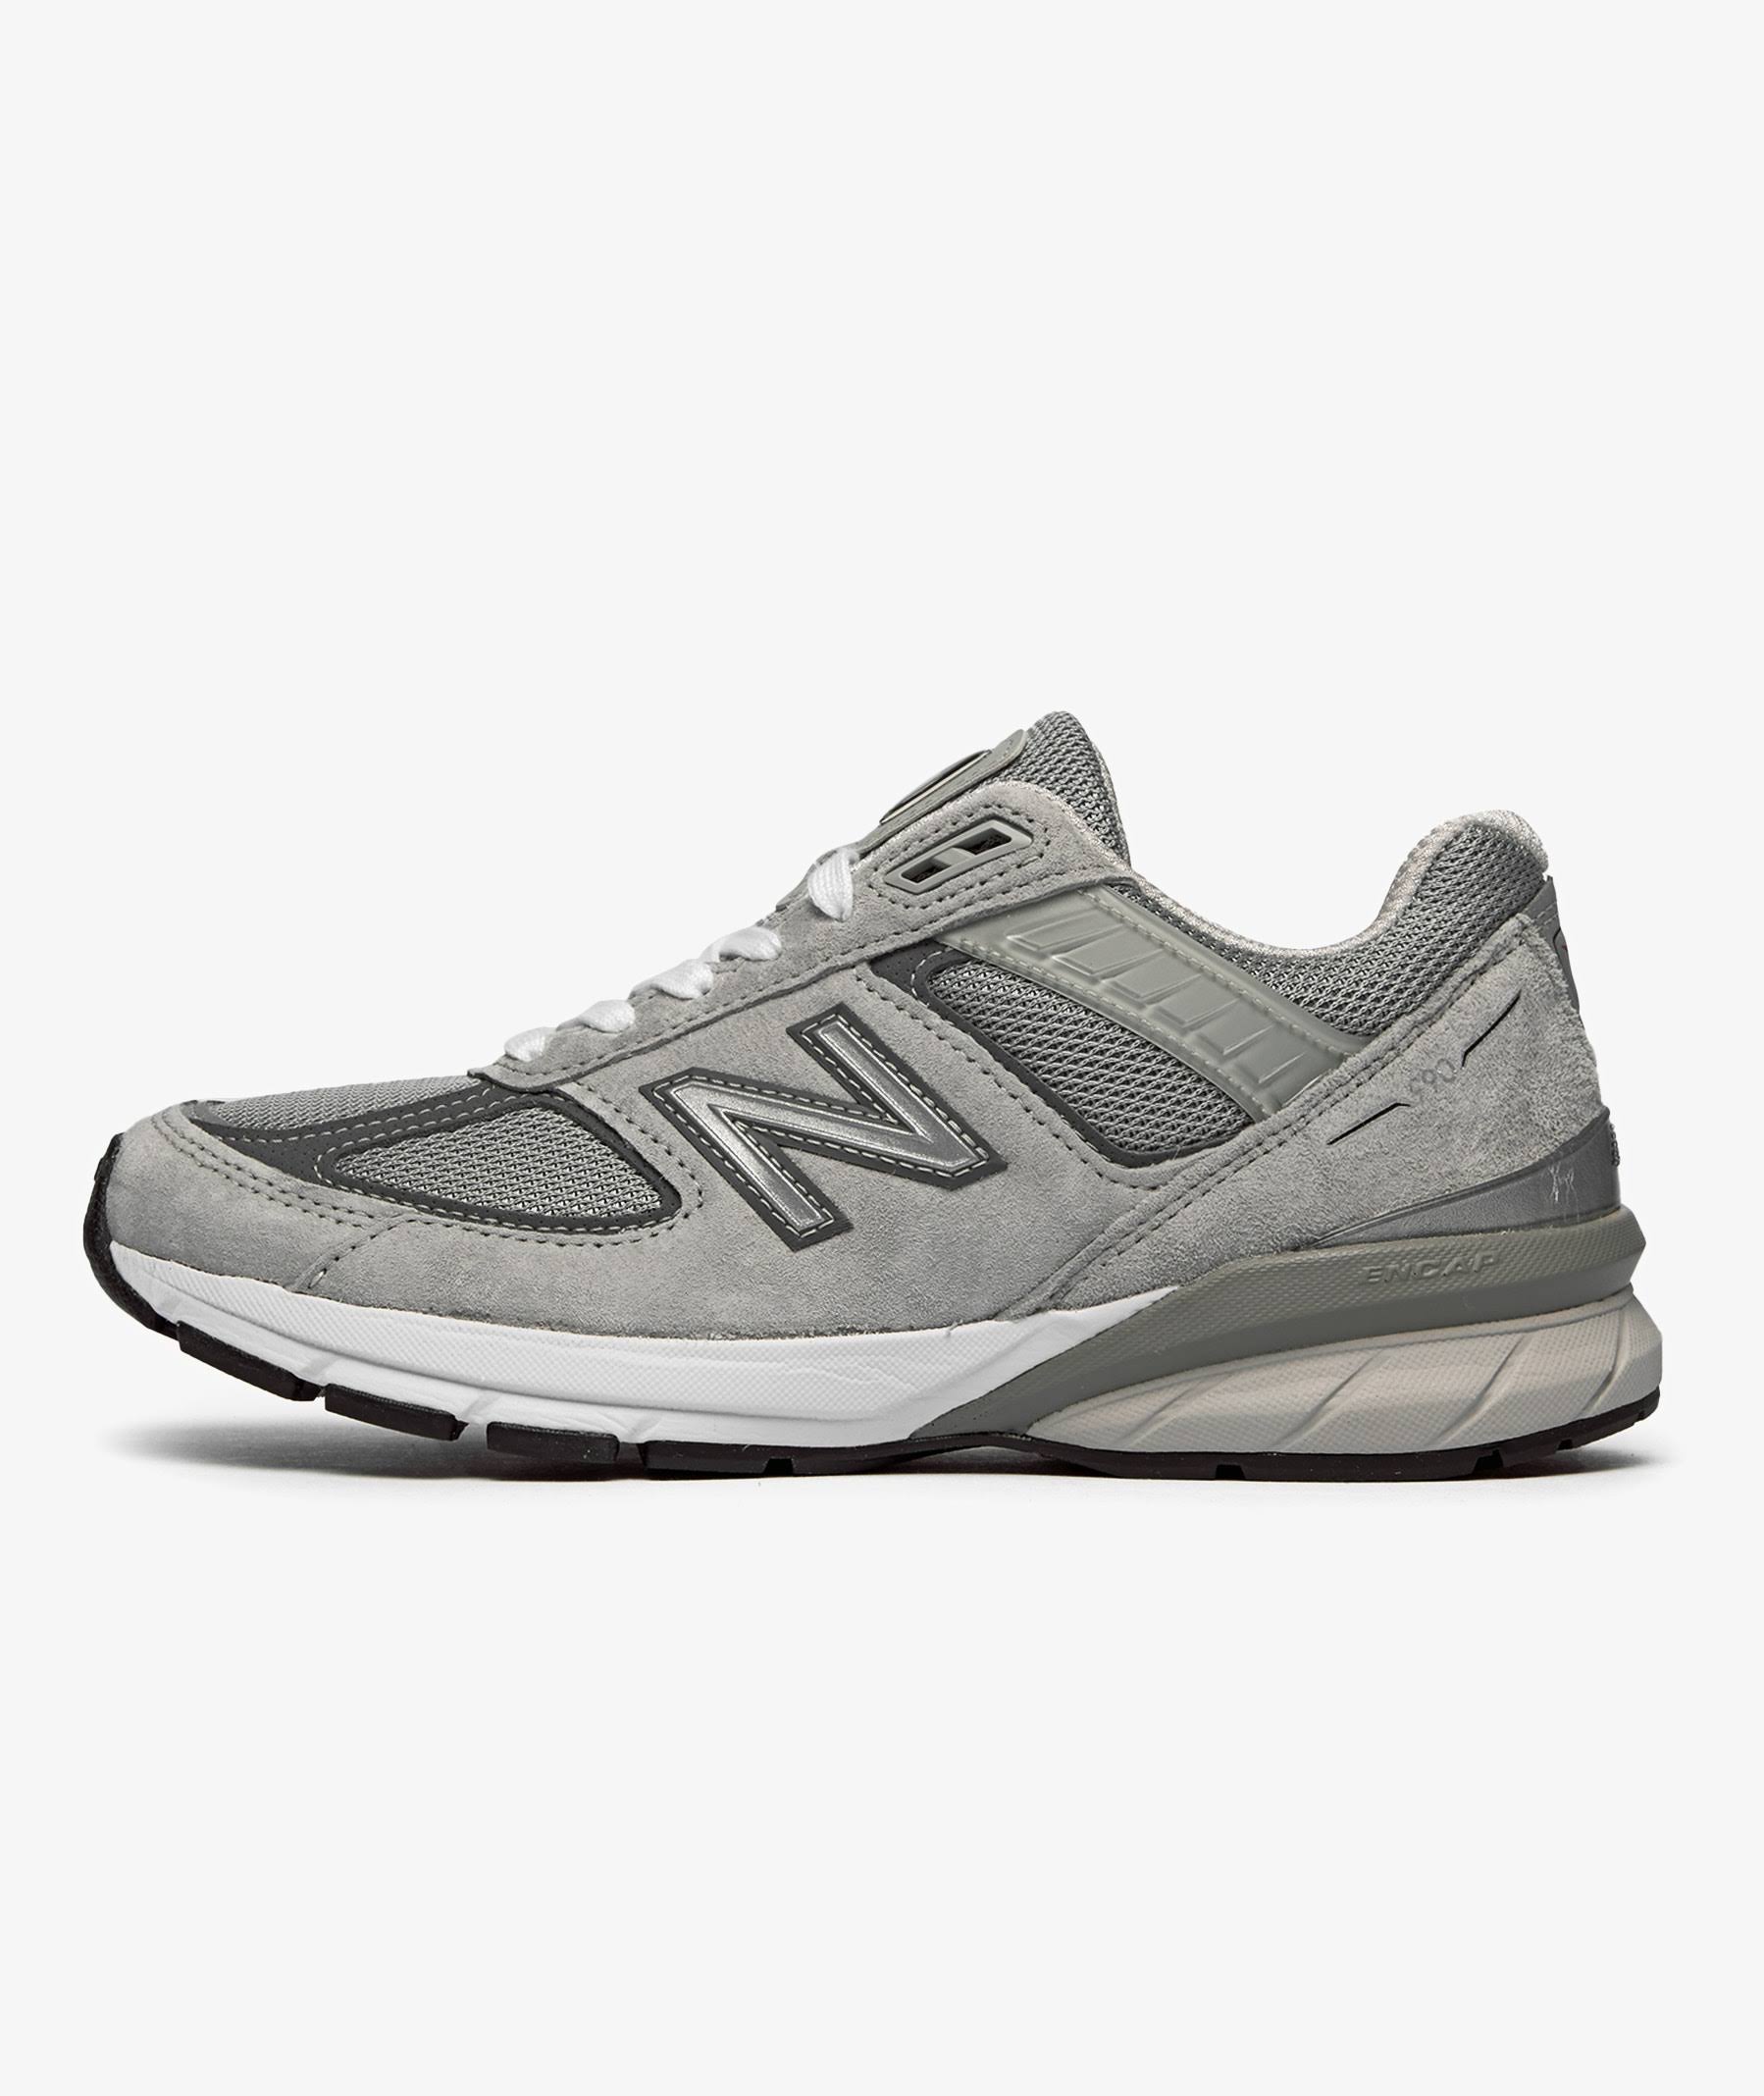 New Balance 990v5 Grey